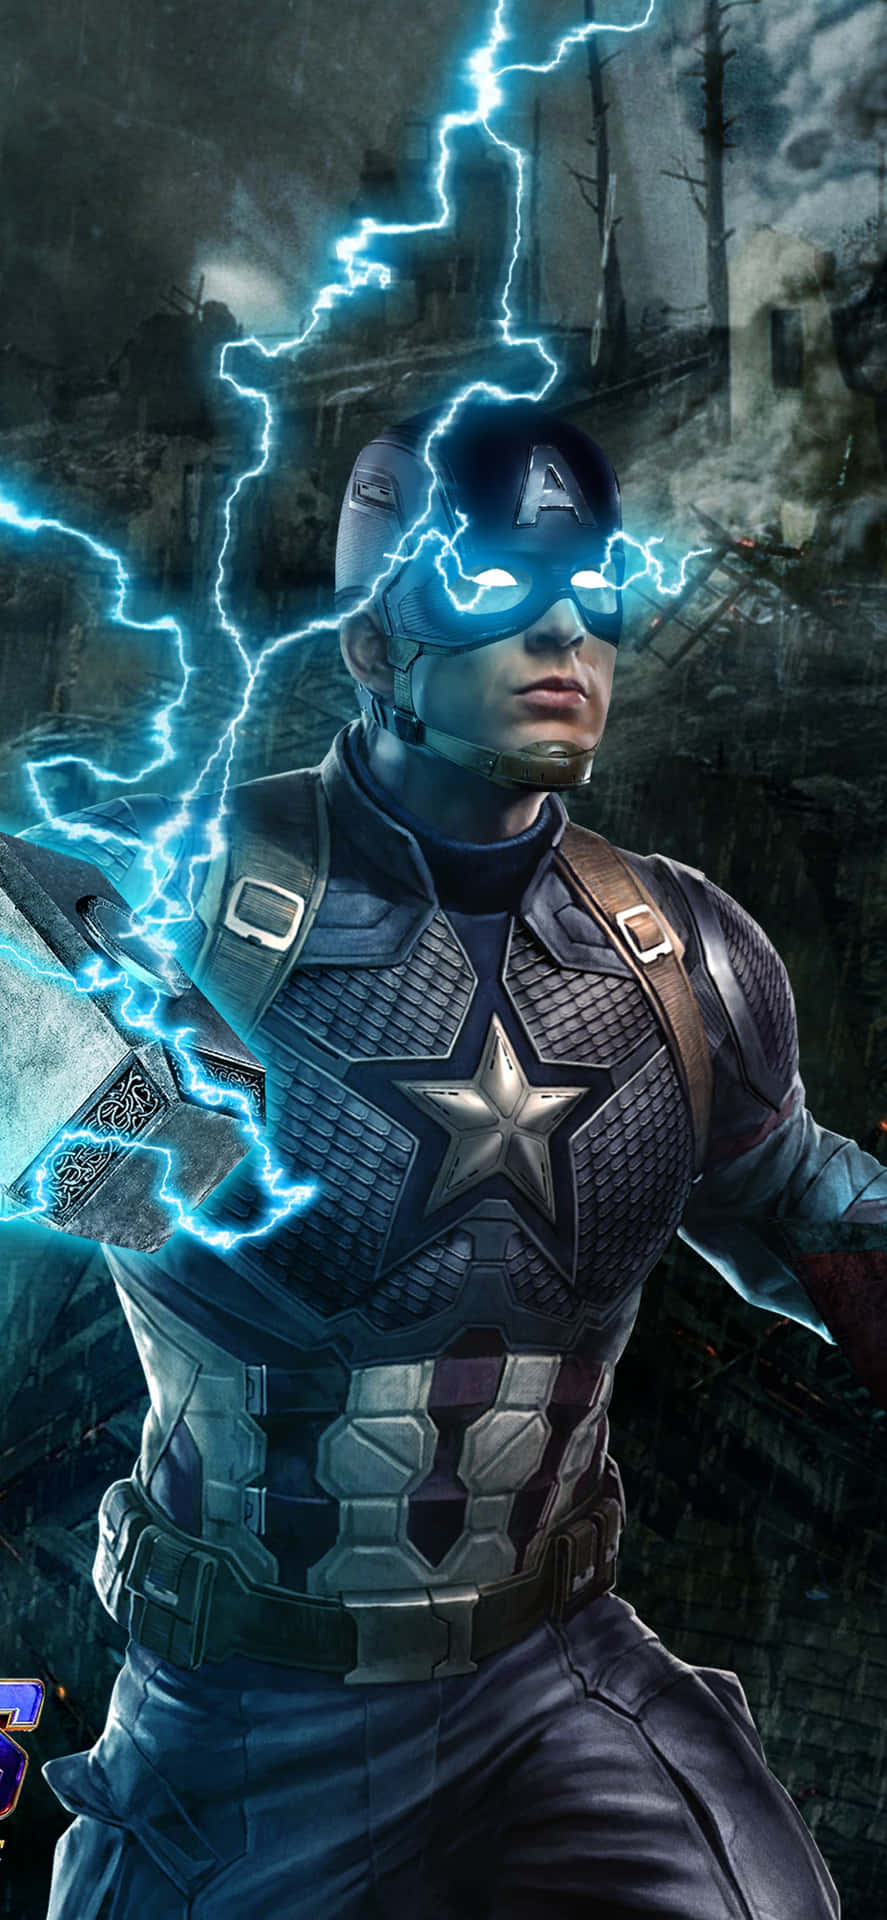 Gliavengers Si Riuniscono - Captain America In Endgame Sfondo